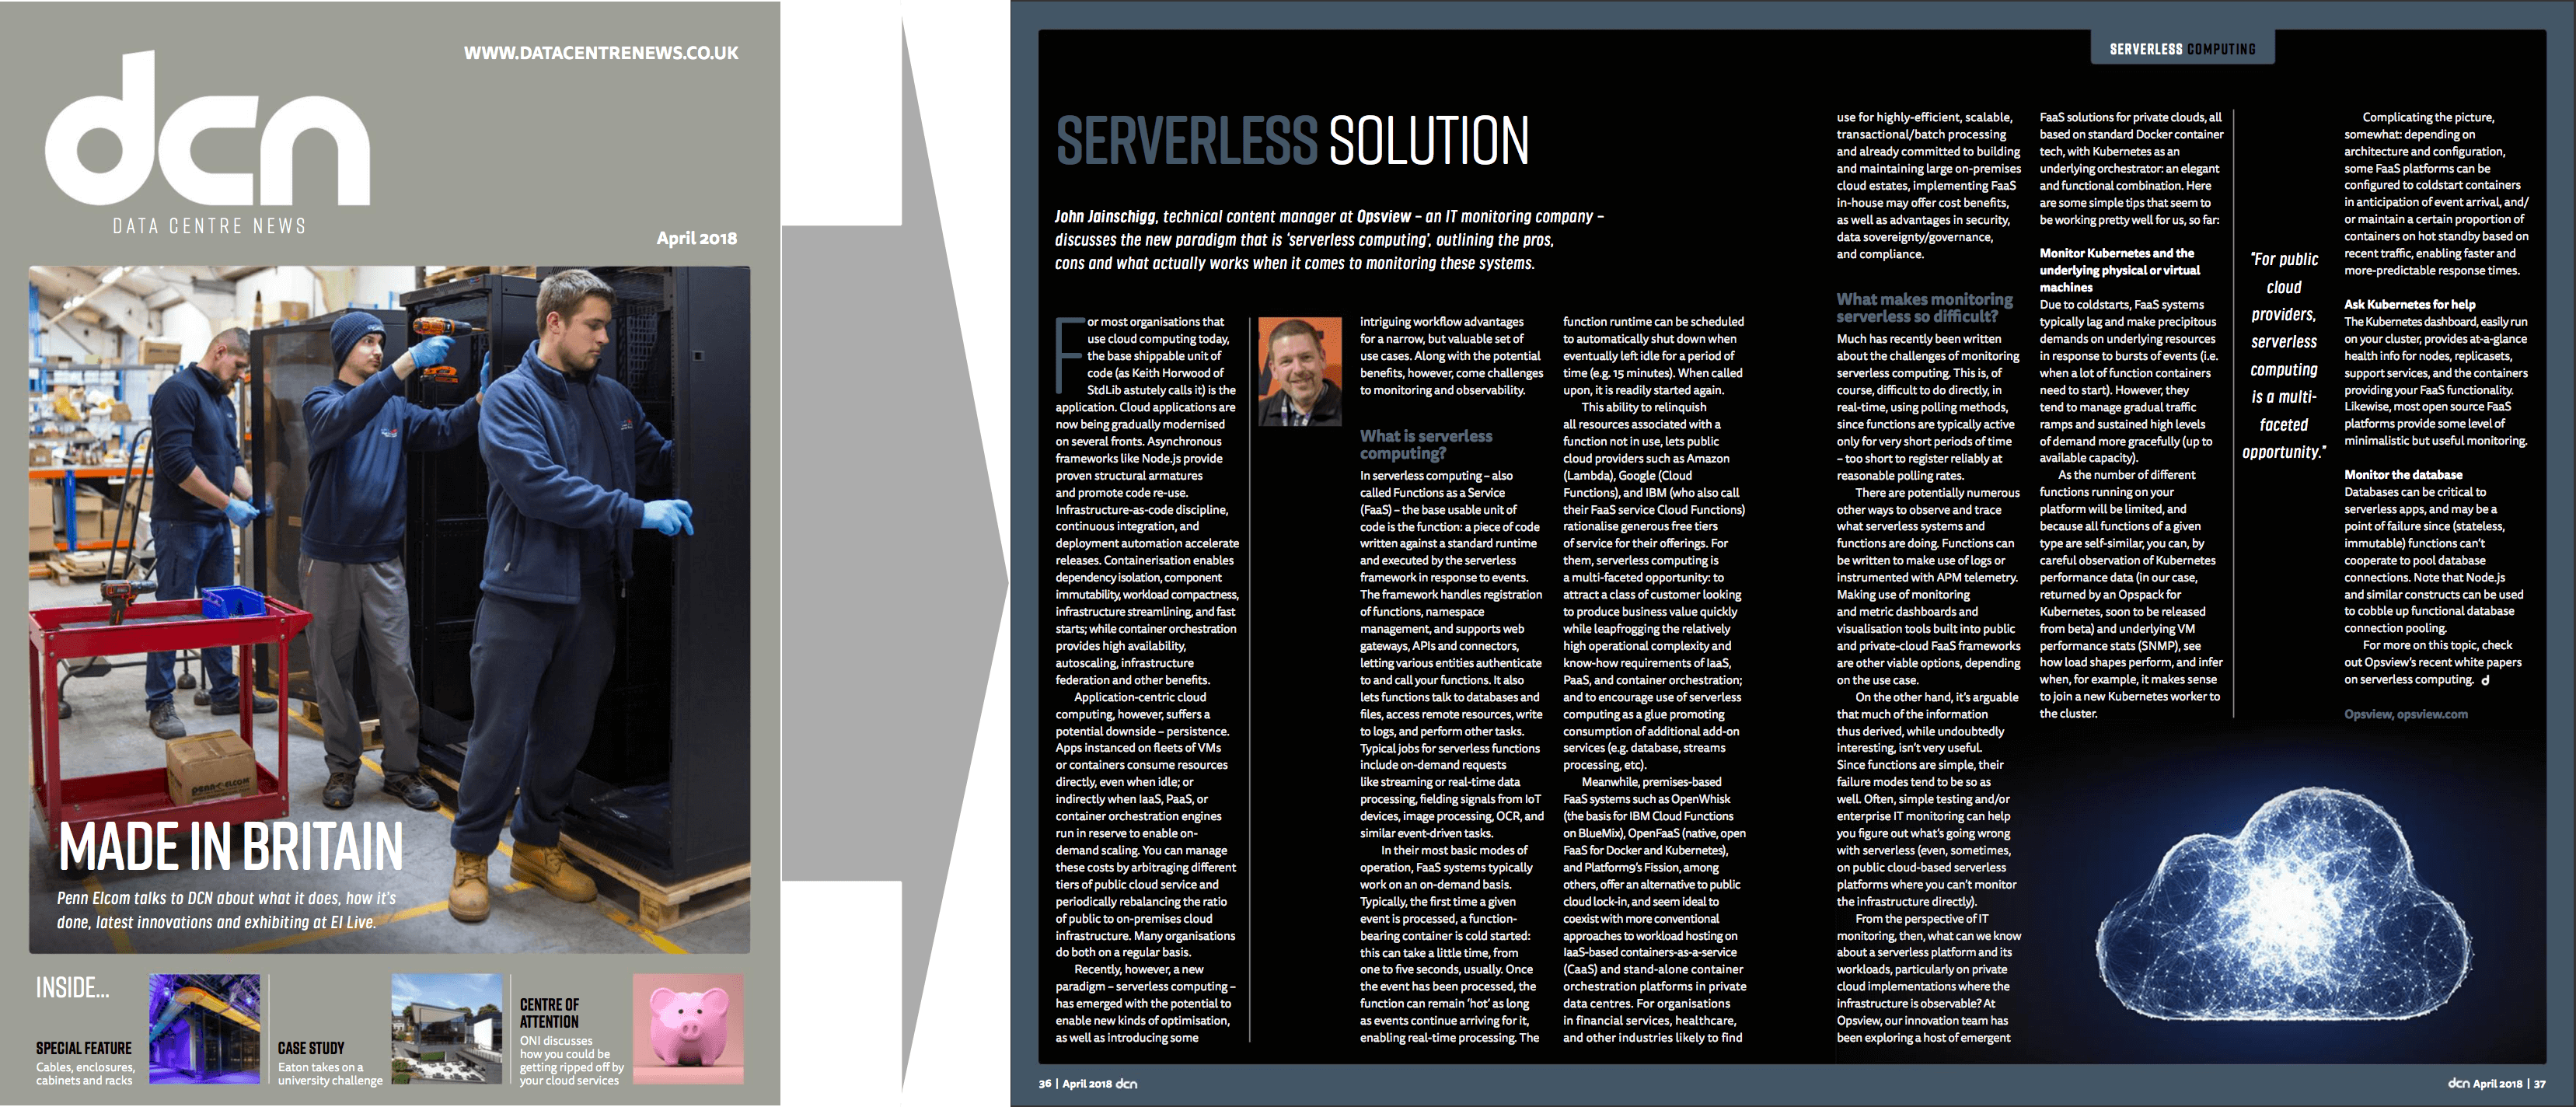 CDN: Serverless Solution